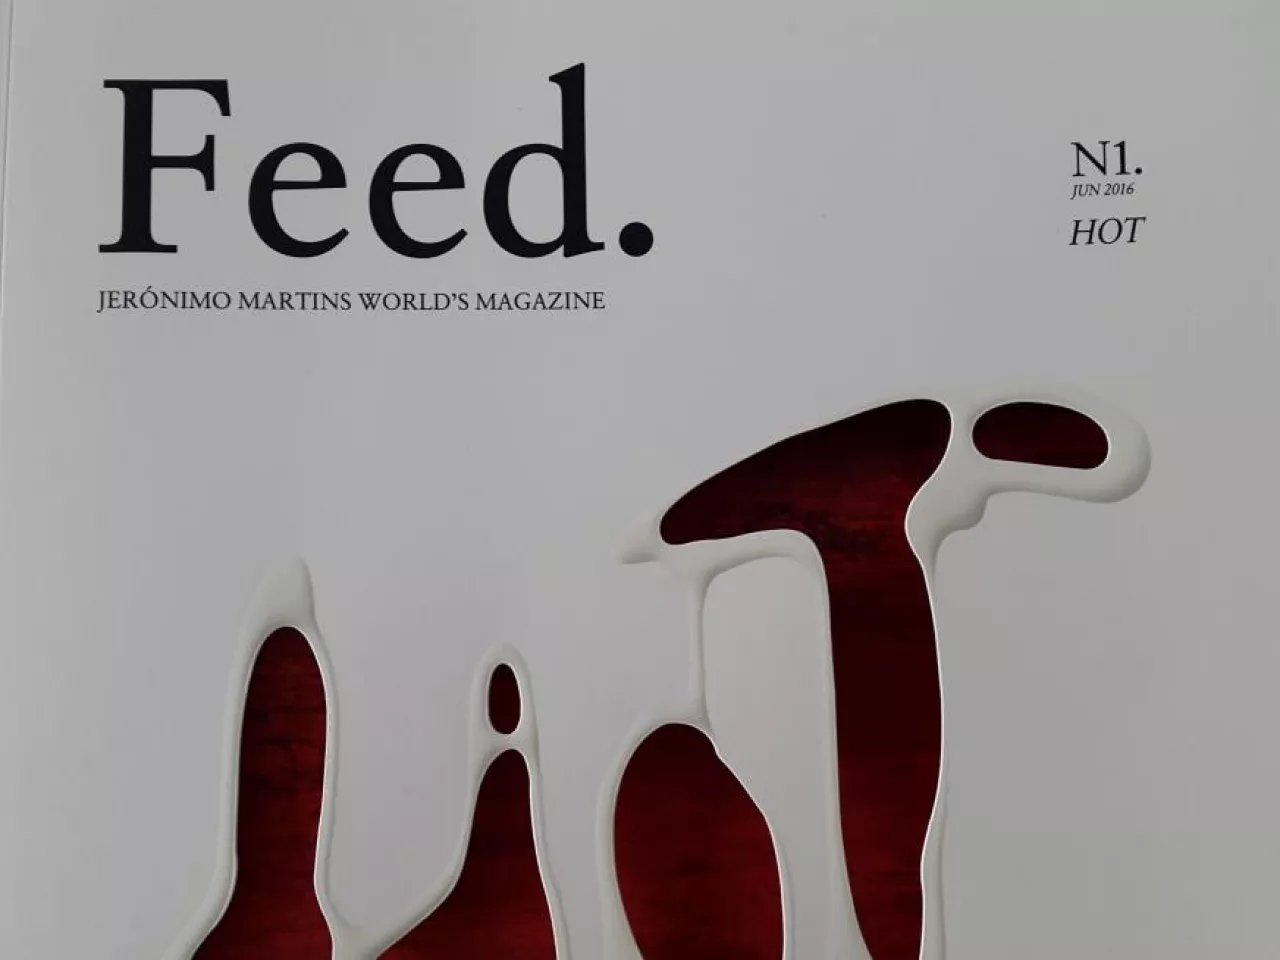 Na zdj. fragment okładki pierwszego numeru magazynu ”Feed”, wydawanego przez Jeronimo Martins (fot. materiały własne)